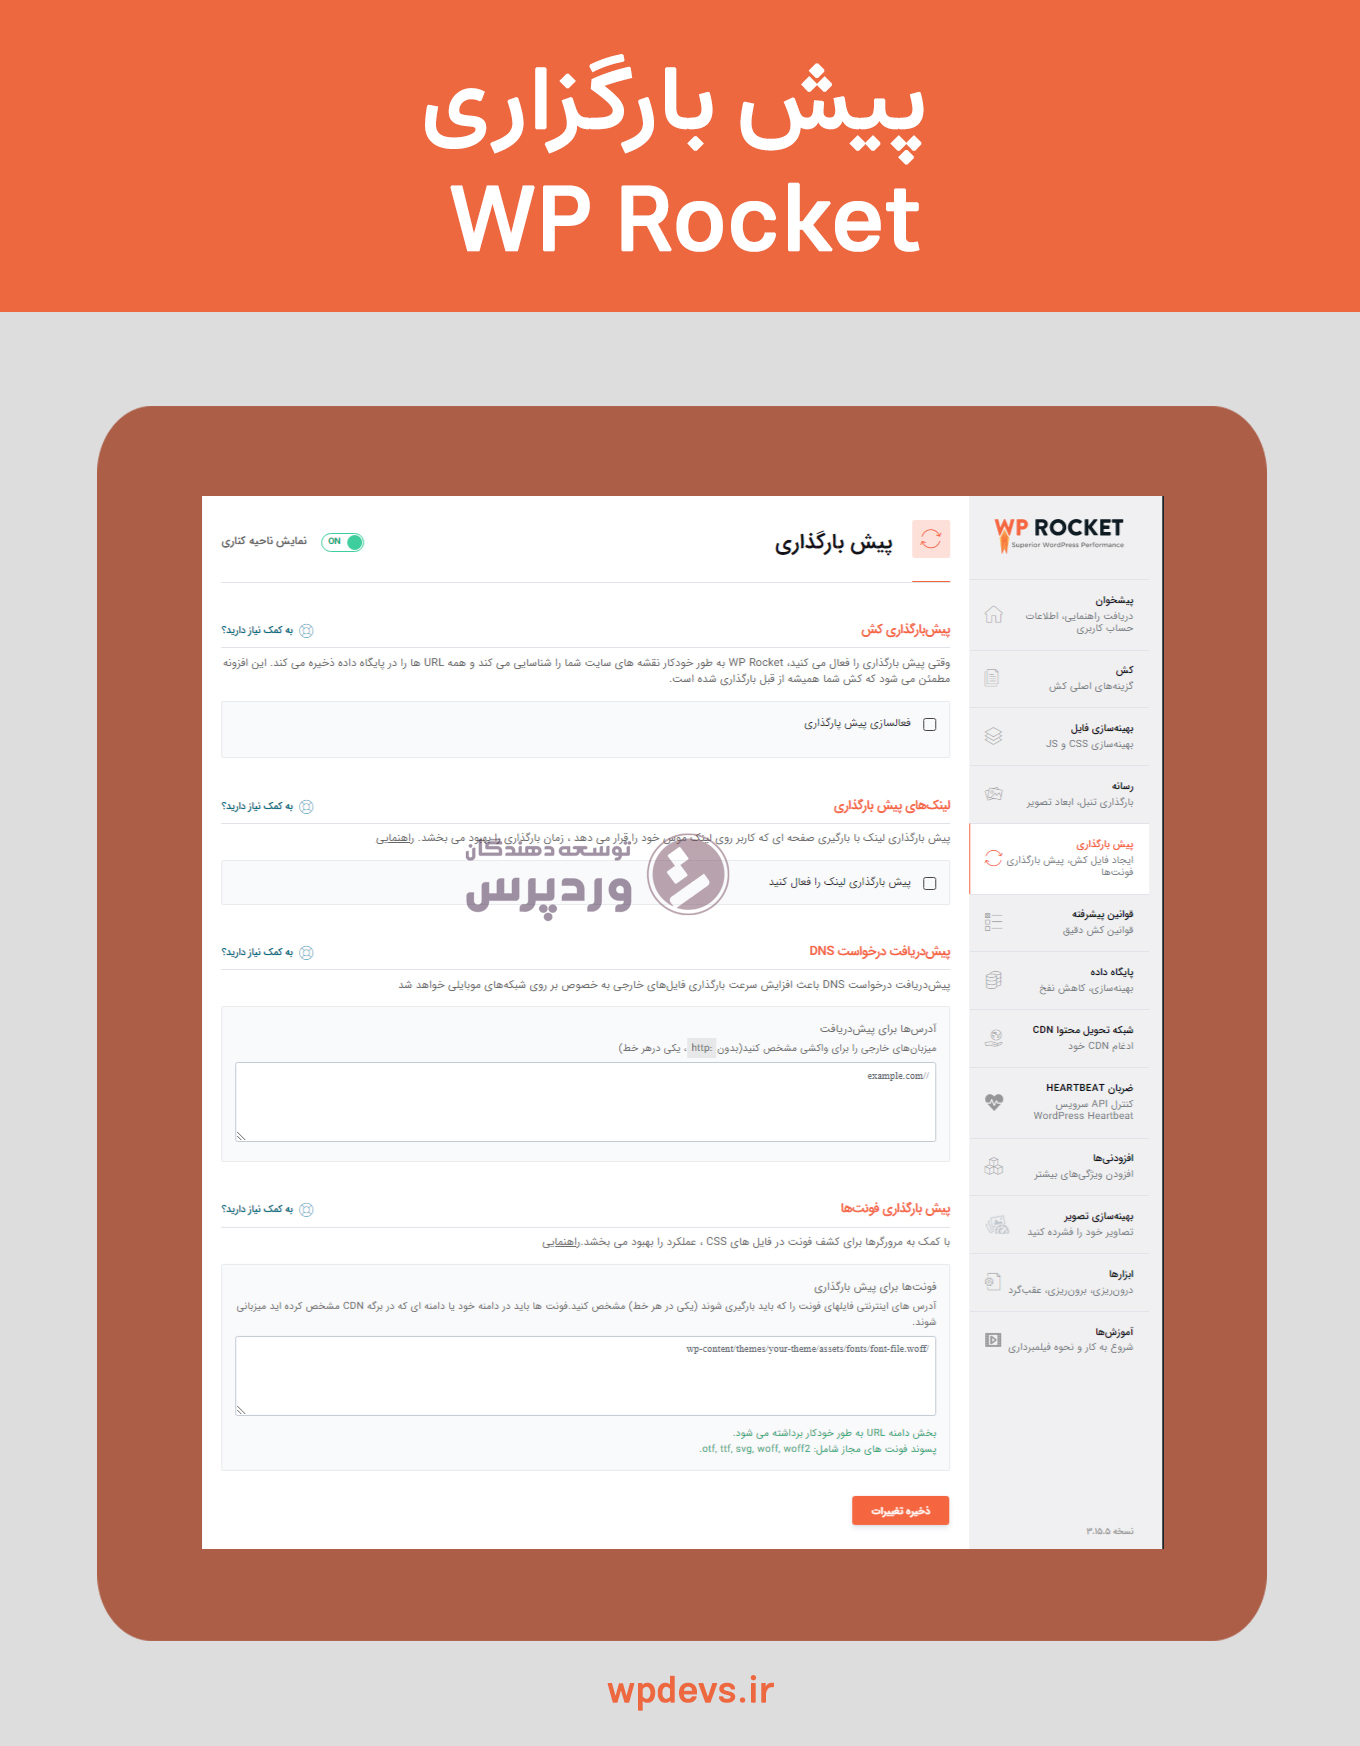 افزونه بهینه سازی و افزایش سرعت سایت wp rocket پیش بارگزاری 